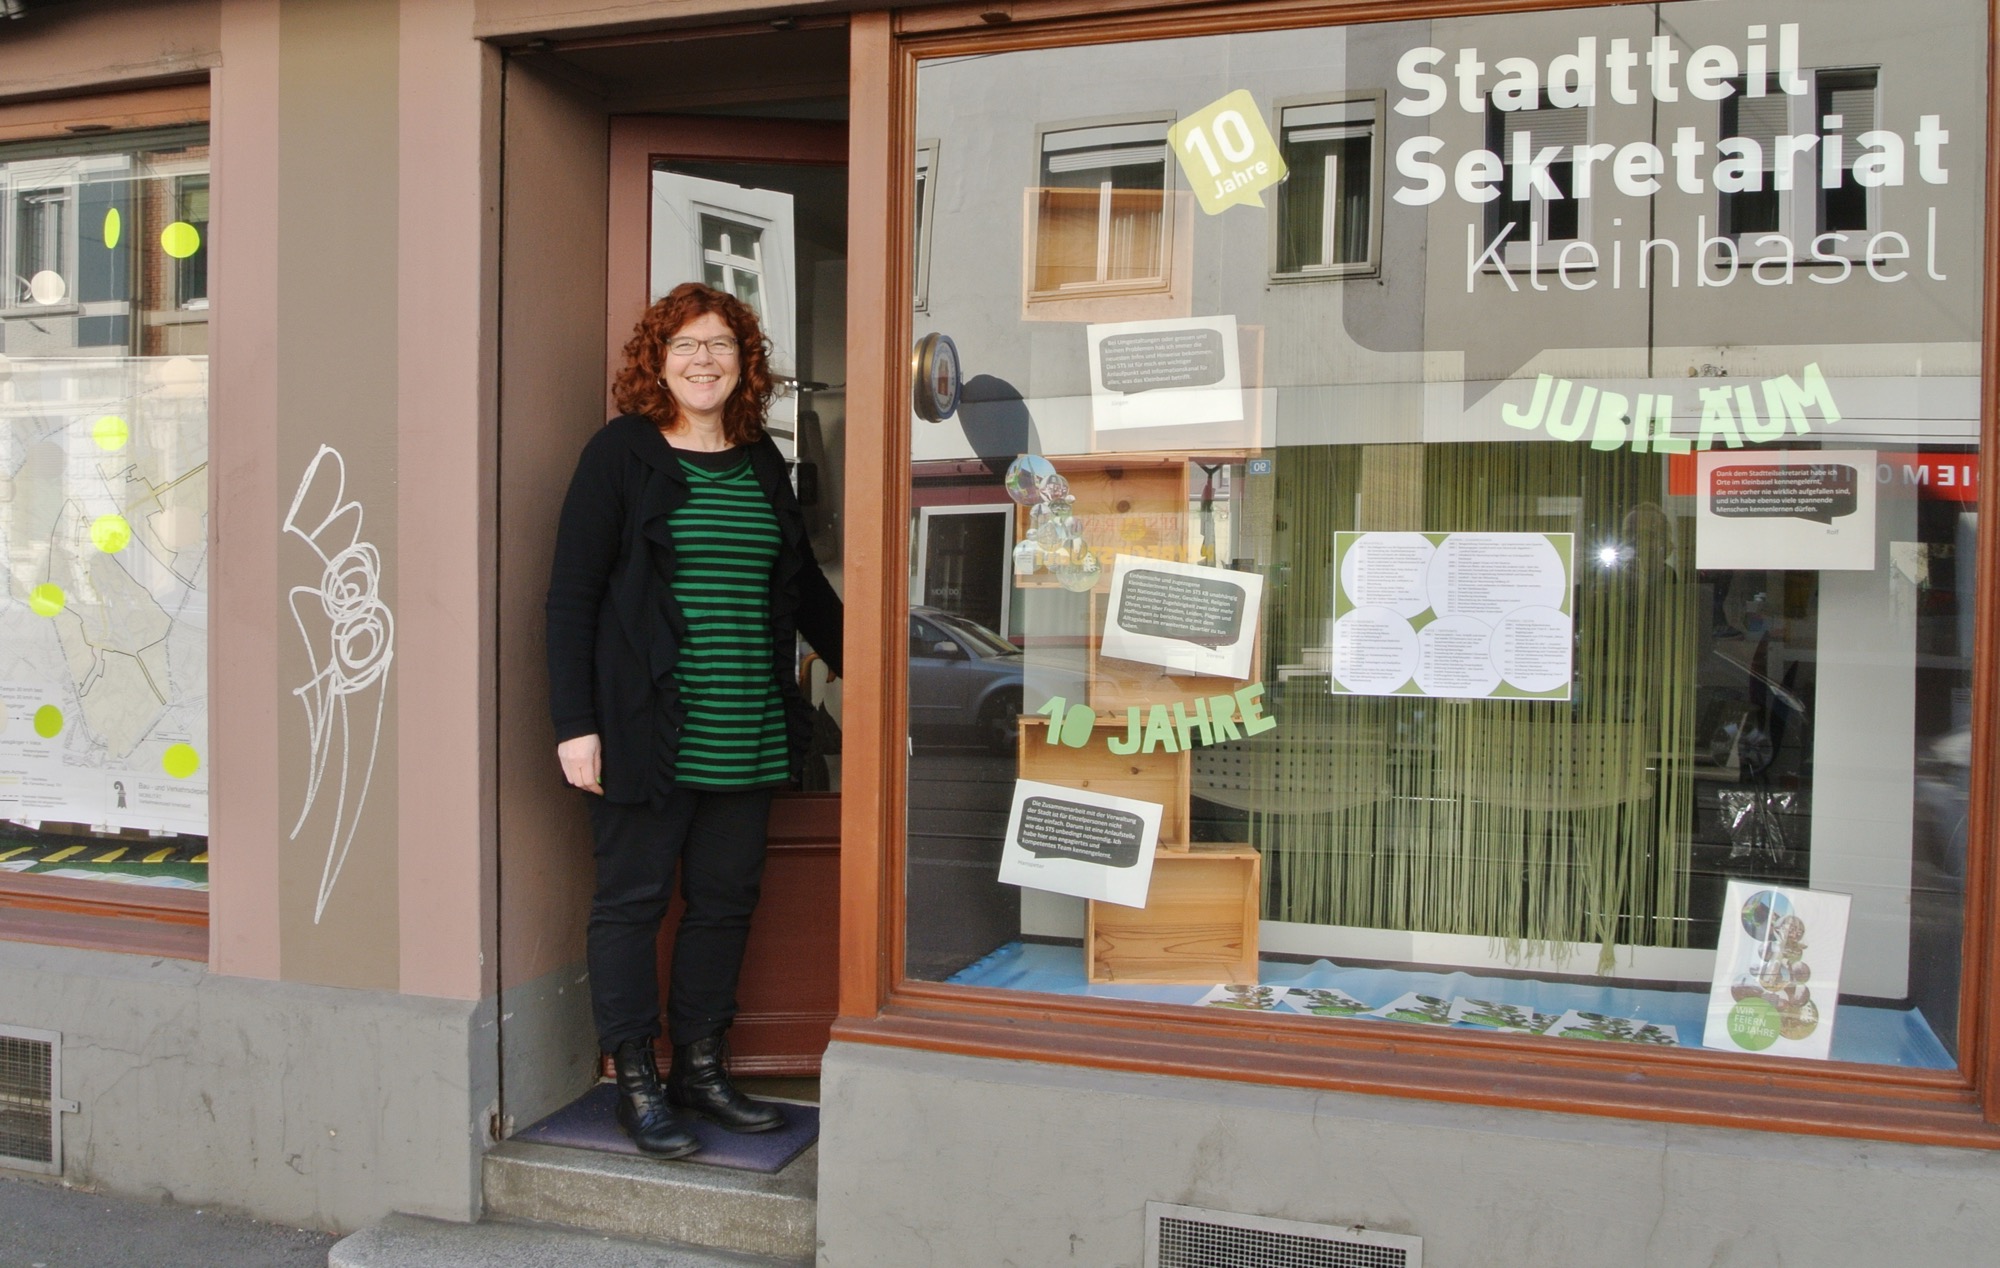 «Miss Kleinbasel» Theres Wernli vor dem Stadtteilsekretariat Kleinbasel, das in diesem Jahr den zehnten Geburtstag feiert.